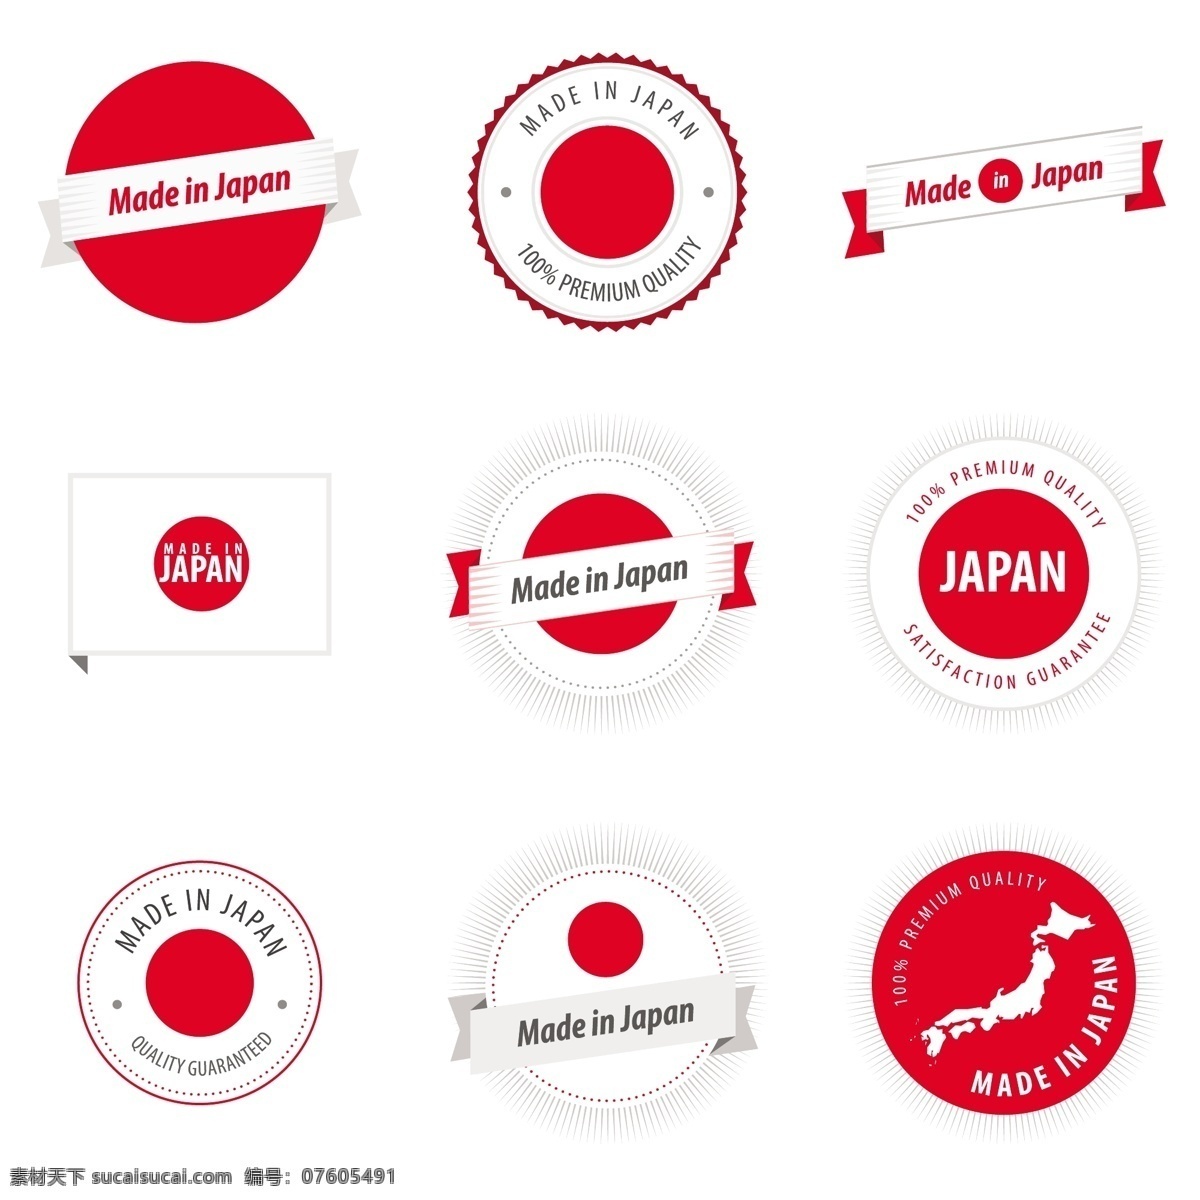 日本包装图标 日本制造 日本图标 包装图标 打包 打包图标 物流图标 运输图标 小图标 小标志 图标 logo 标志 vi icon 标识 图标设计 logo设计 标志设计 标识设计 矢量设计 矢量图标 欧美图标 欧美设计 其他图标 标志图标